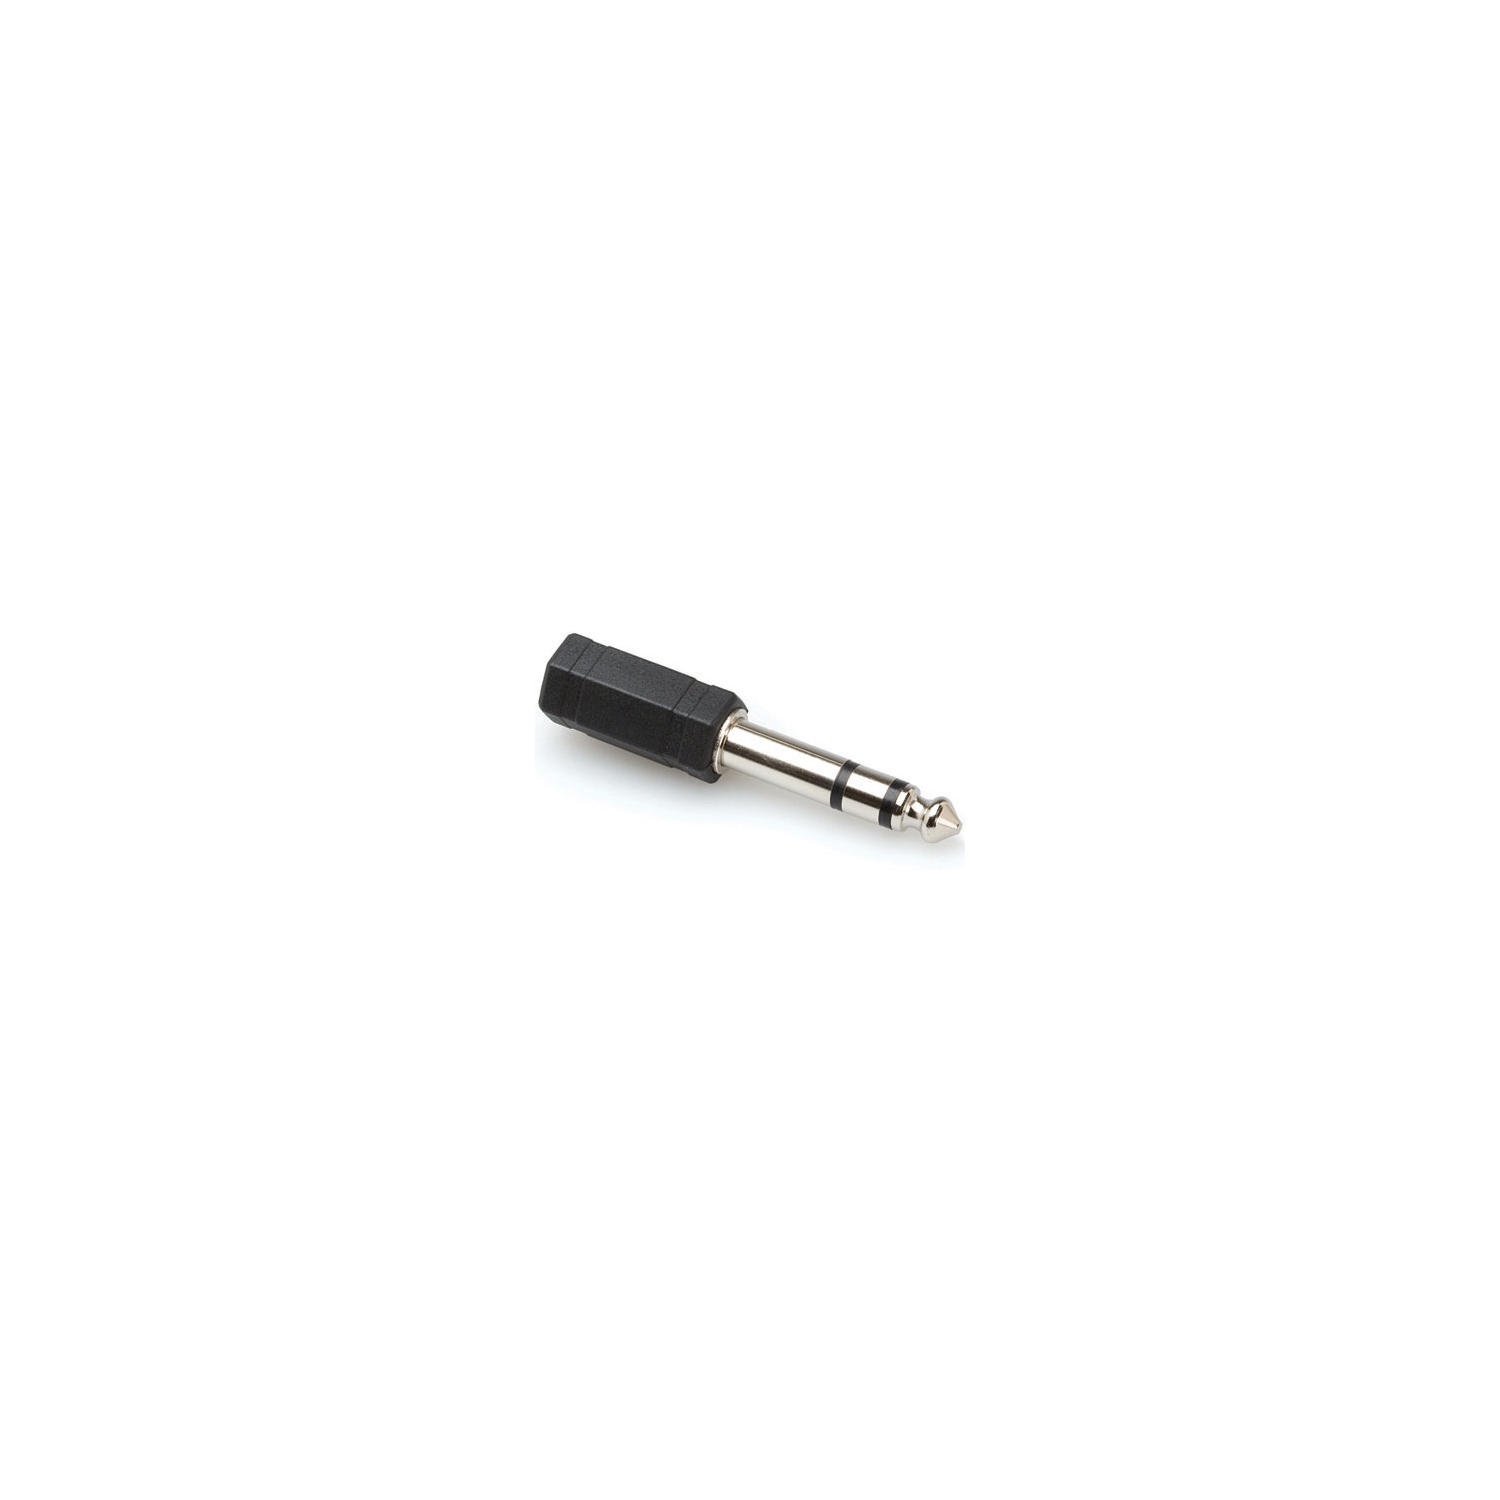 Hosa GPM-103 Adaptador de 3.5mm mini plug stereo a 1/4 TRS